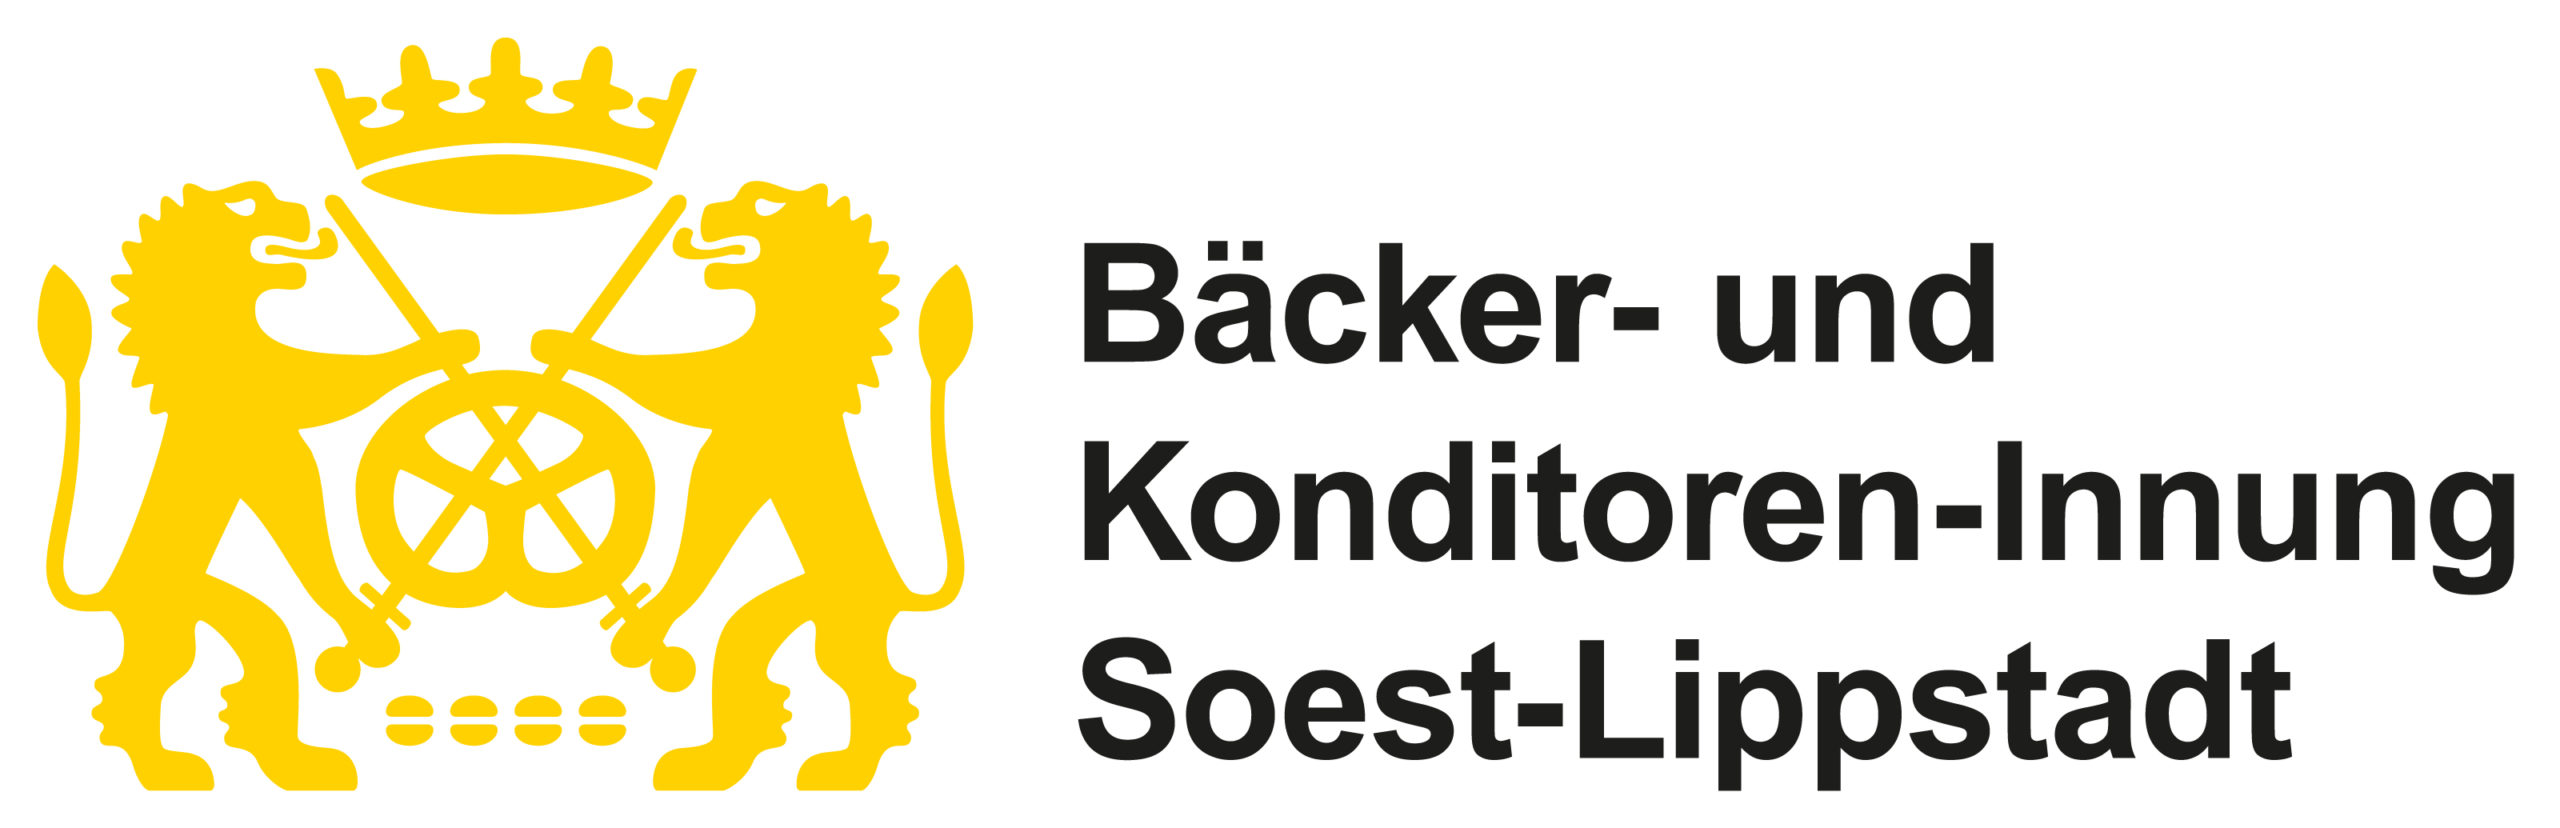 Bäcker- und Konditoren-Innung Soest-Lippstadt